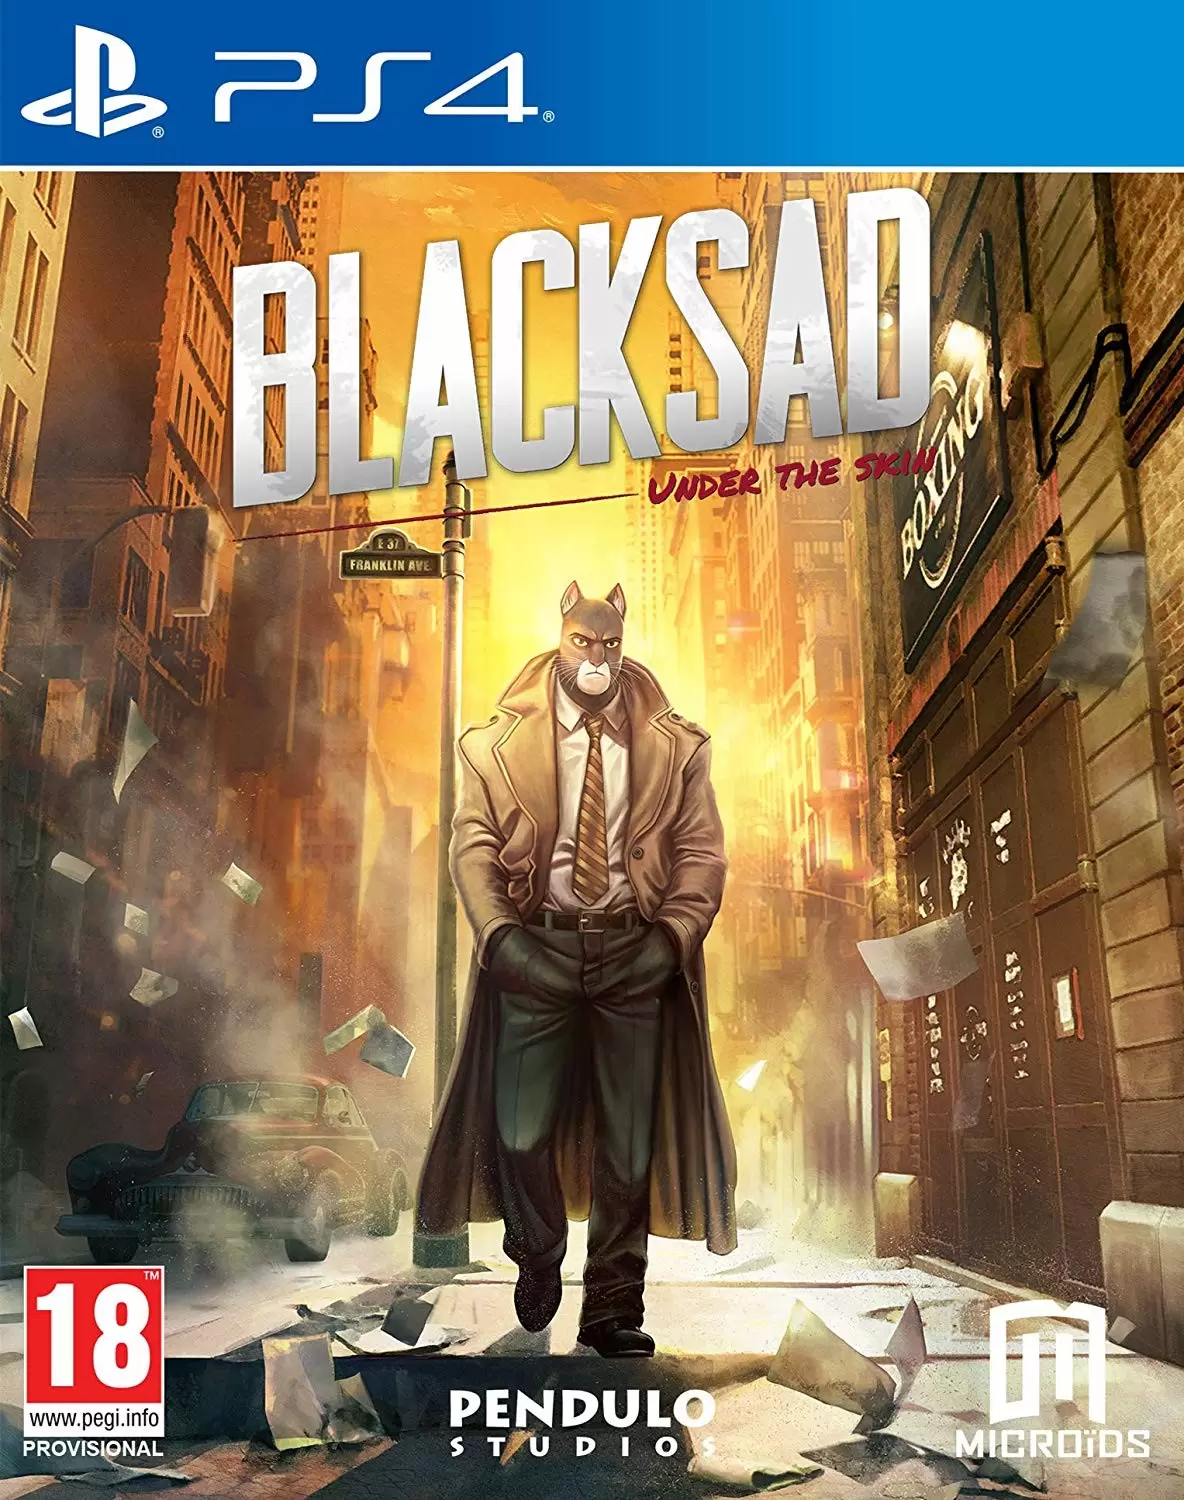 PS4 Games - Blacksad Under The Skin